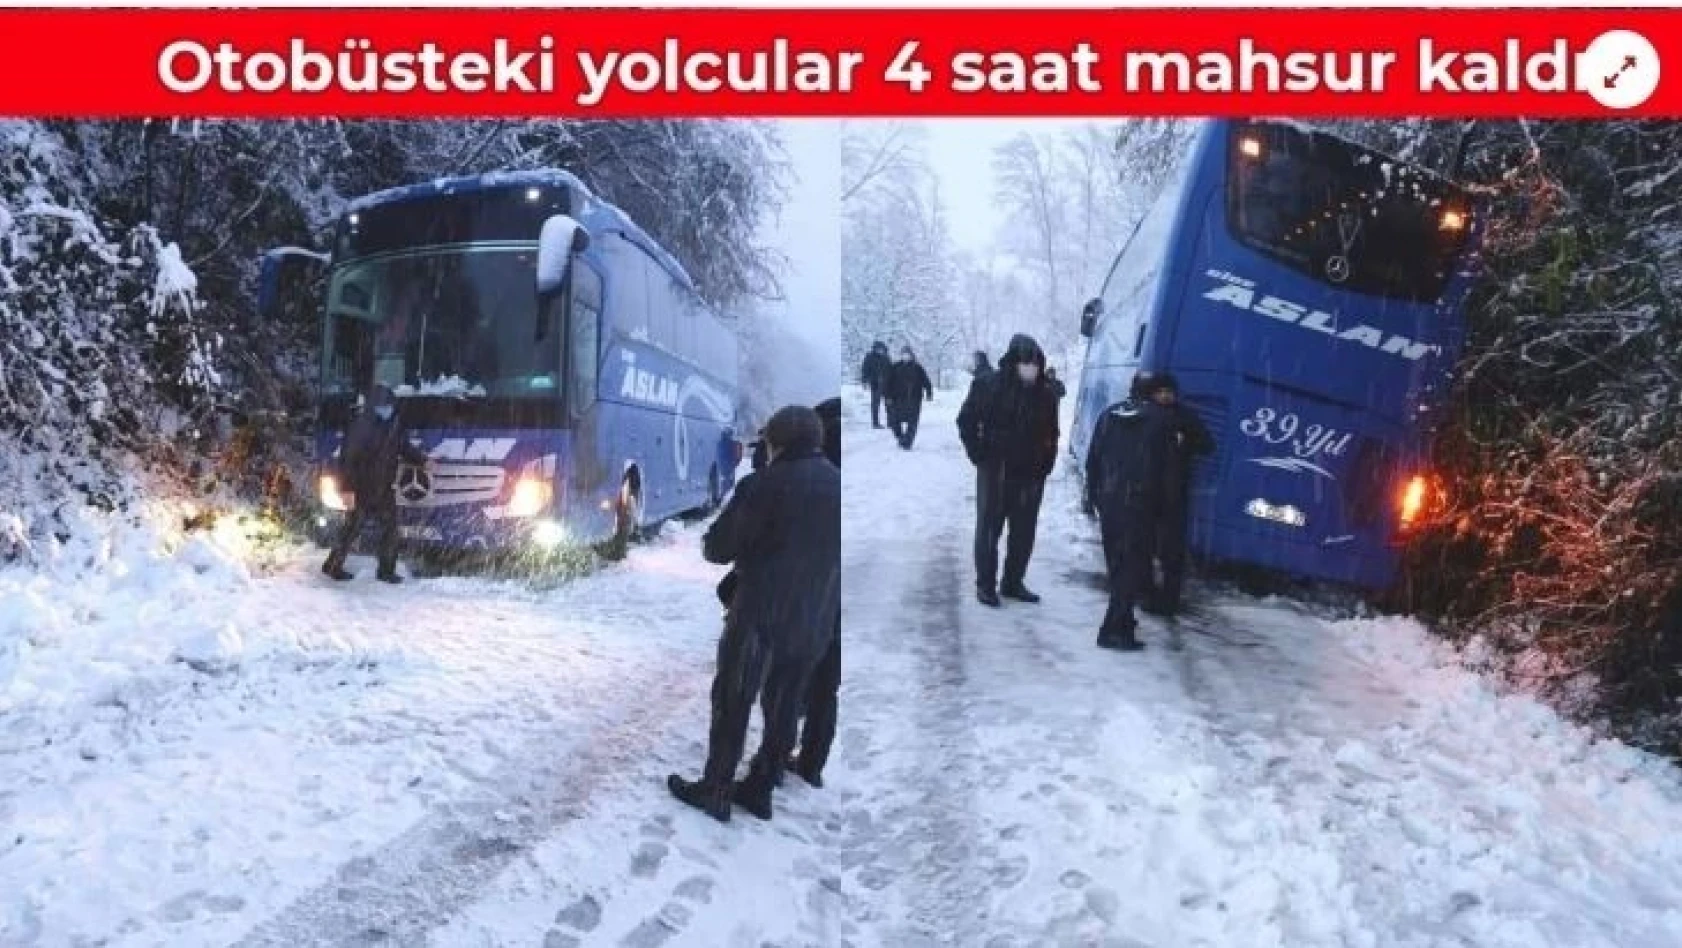 Yolcu otobüsü karda mahsur kaldı